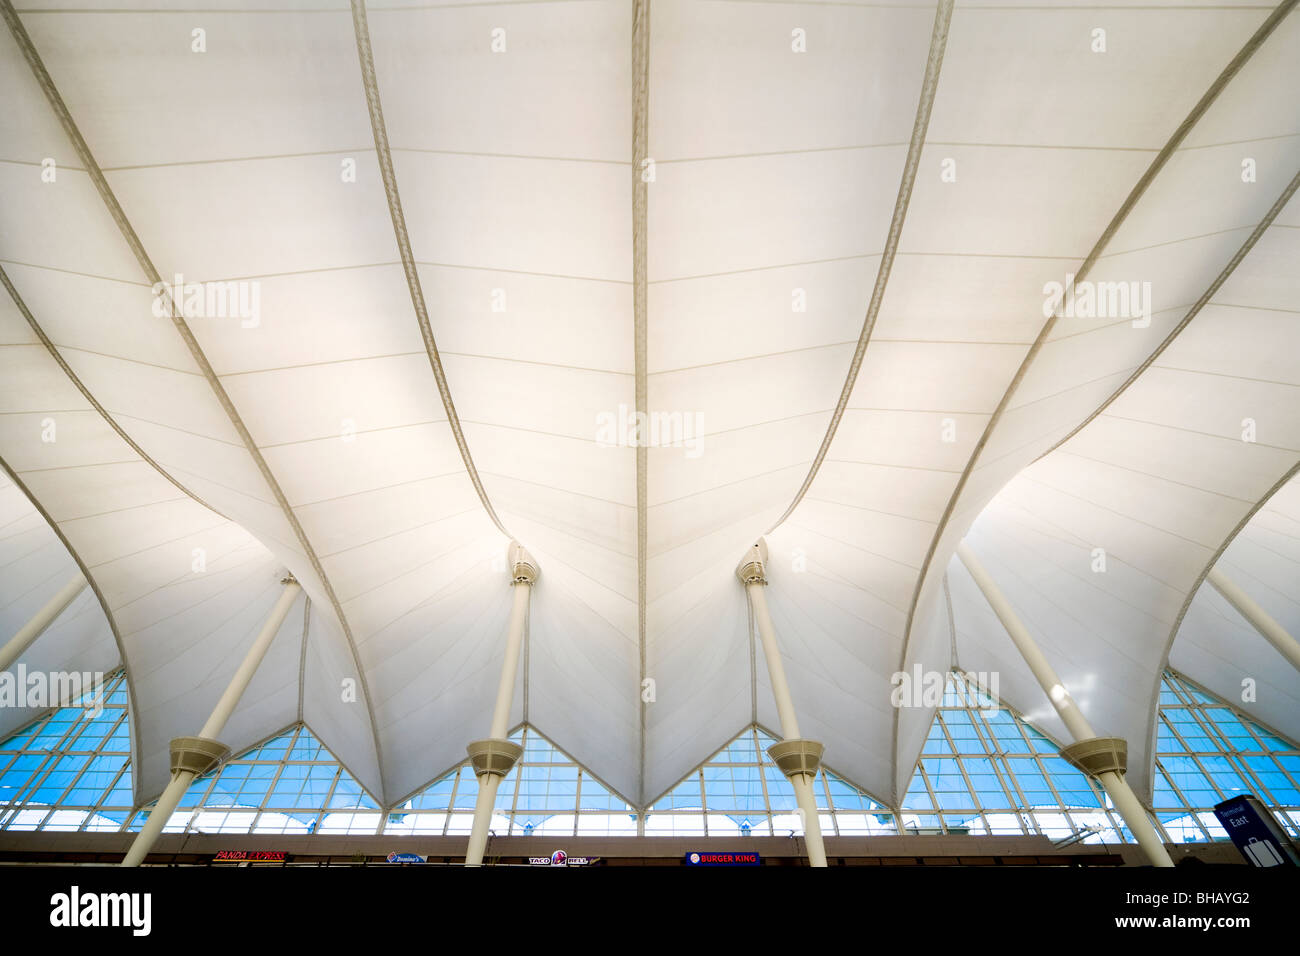 Dall'Aeroporto di Denver tenda-come struttura del tetto. Resistenza a trazione in tessuto di fibra di vetro. International Jeppesen terminale interno. Siamo stati uniti d'America Foto Stock